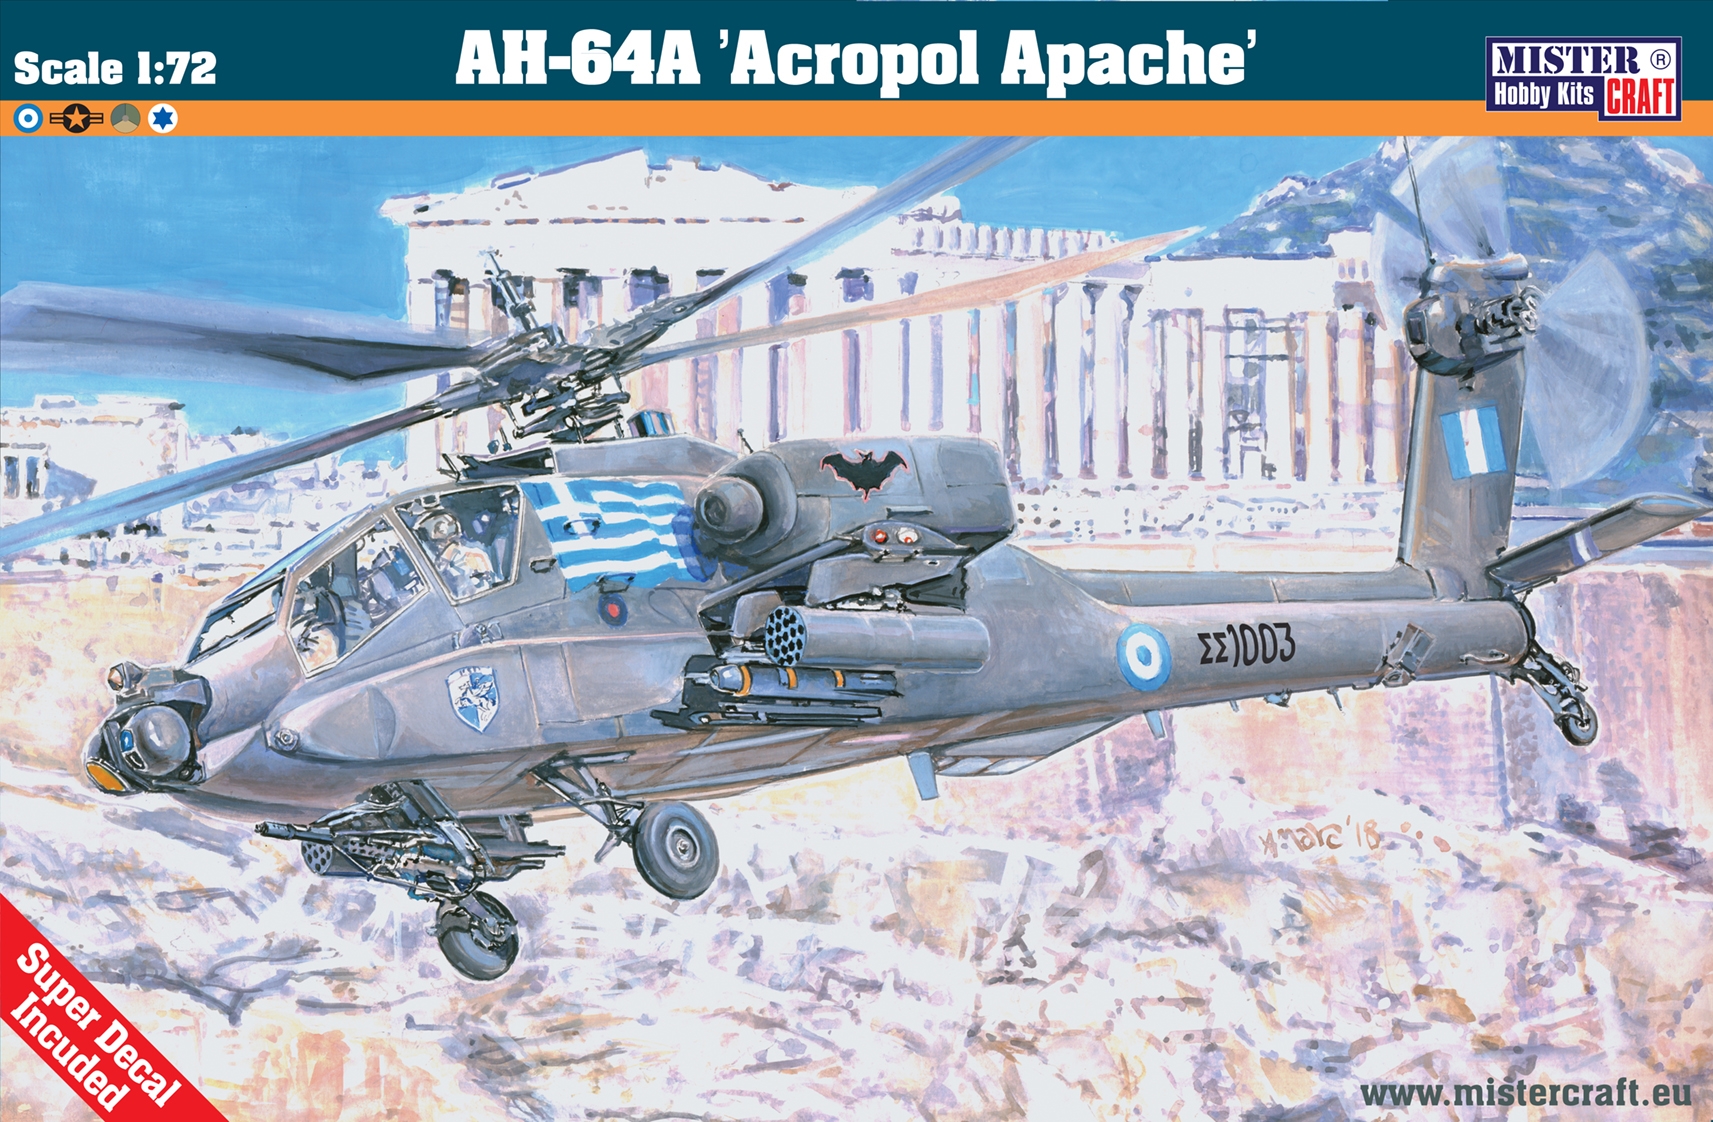 AH-64A Acropol Apache